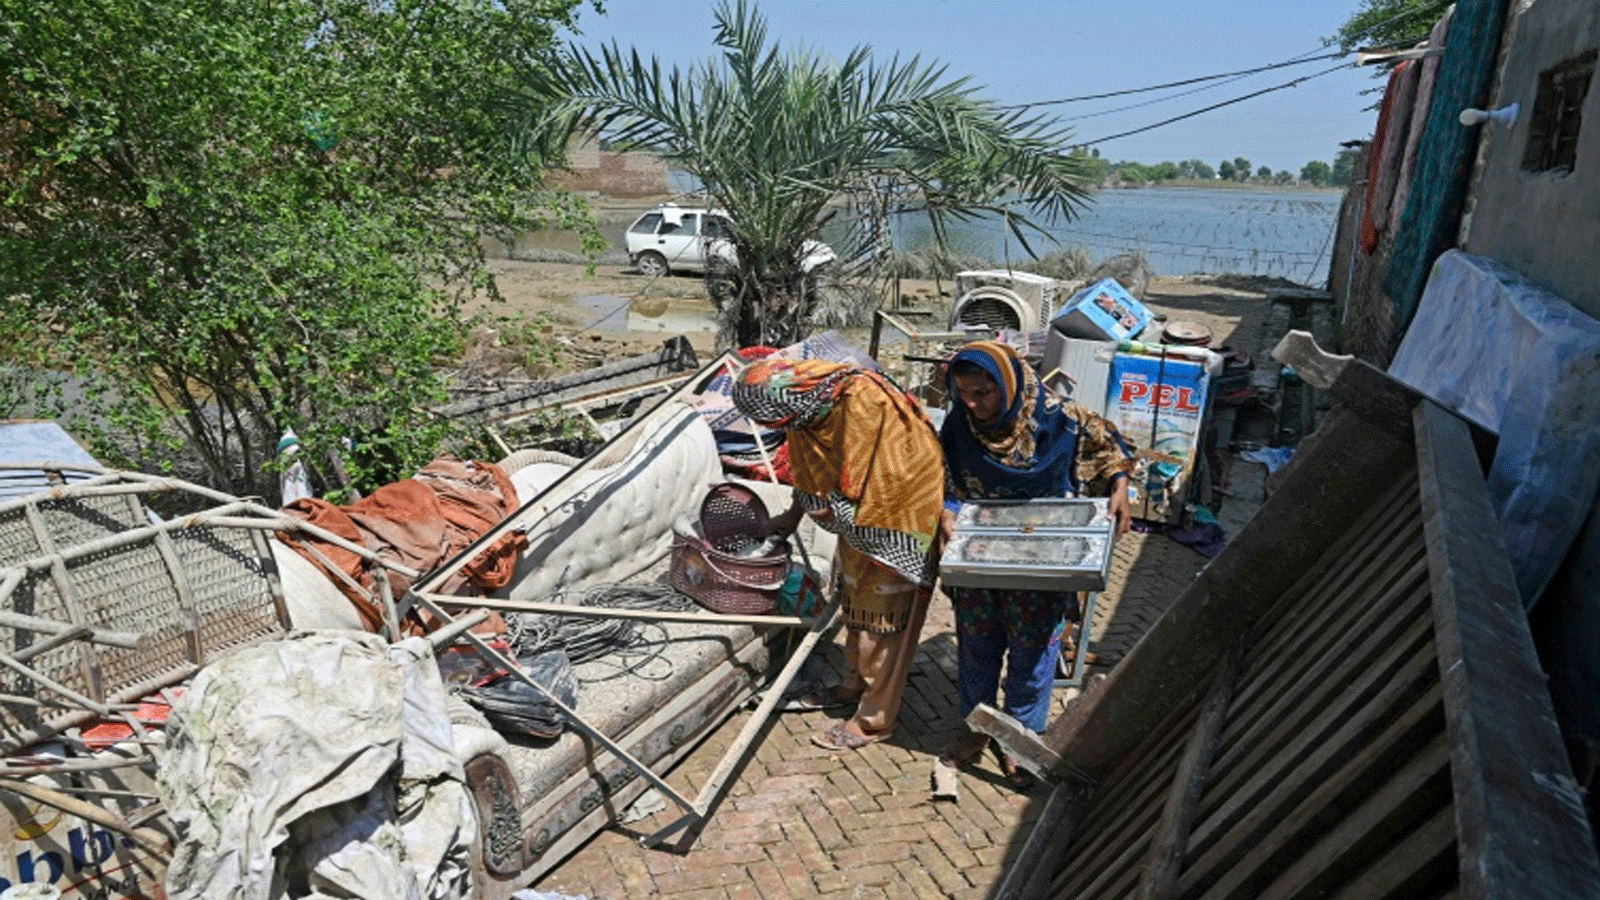  أفراد عائلة الحسين يحاولون إنقاذ ممتلكاتهم من منزلهم الذي دمرته الفيضانات في فاضيلبور، مقاطعة البنجاب